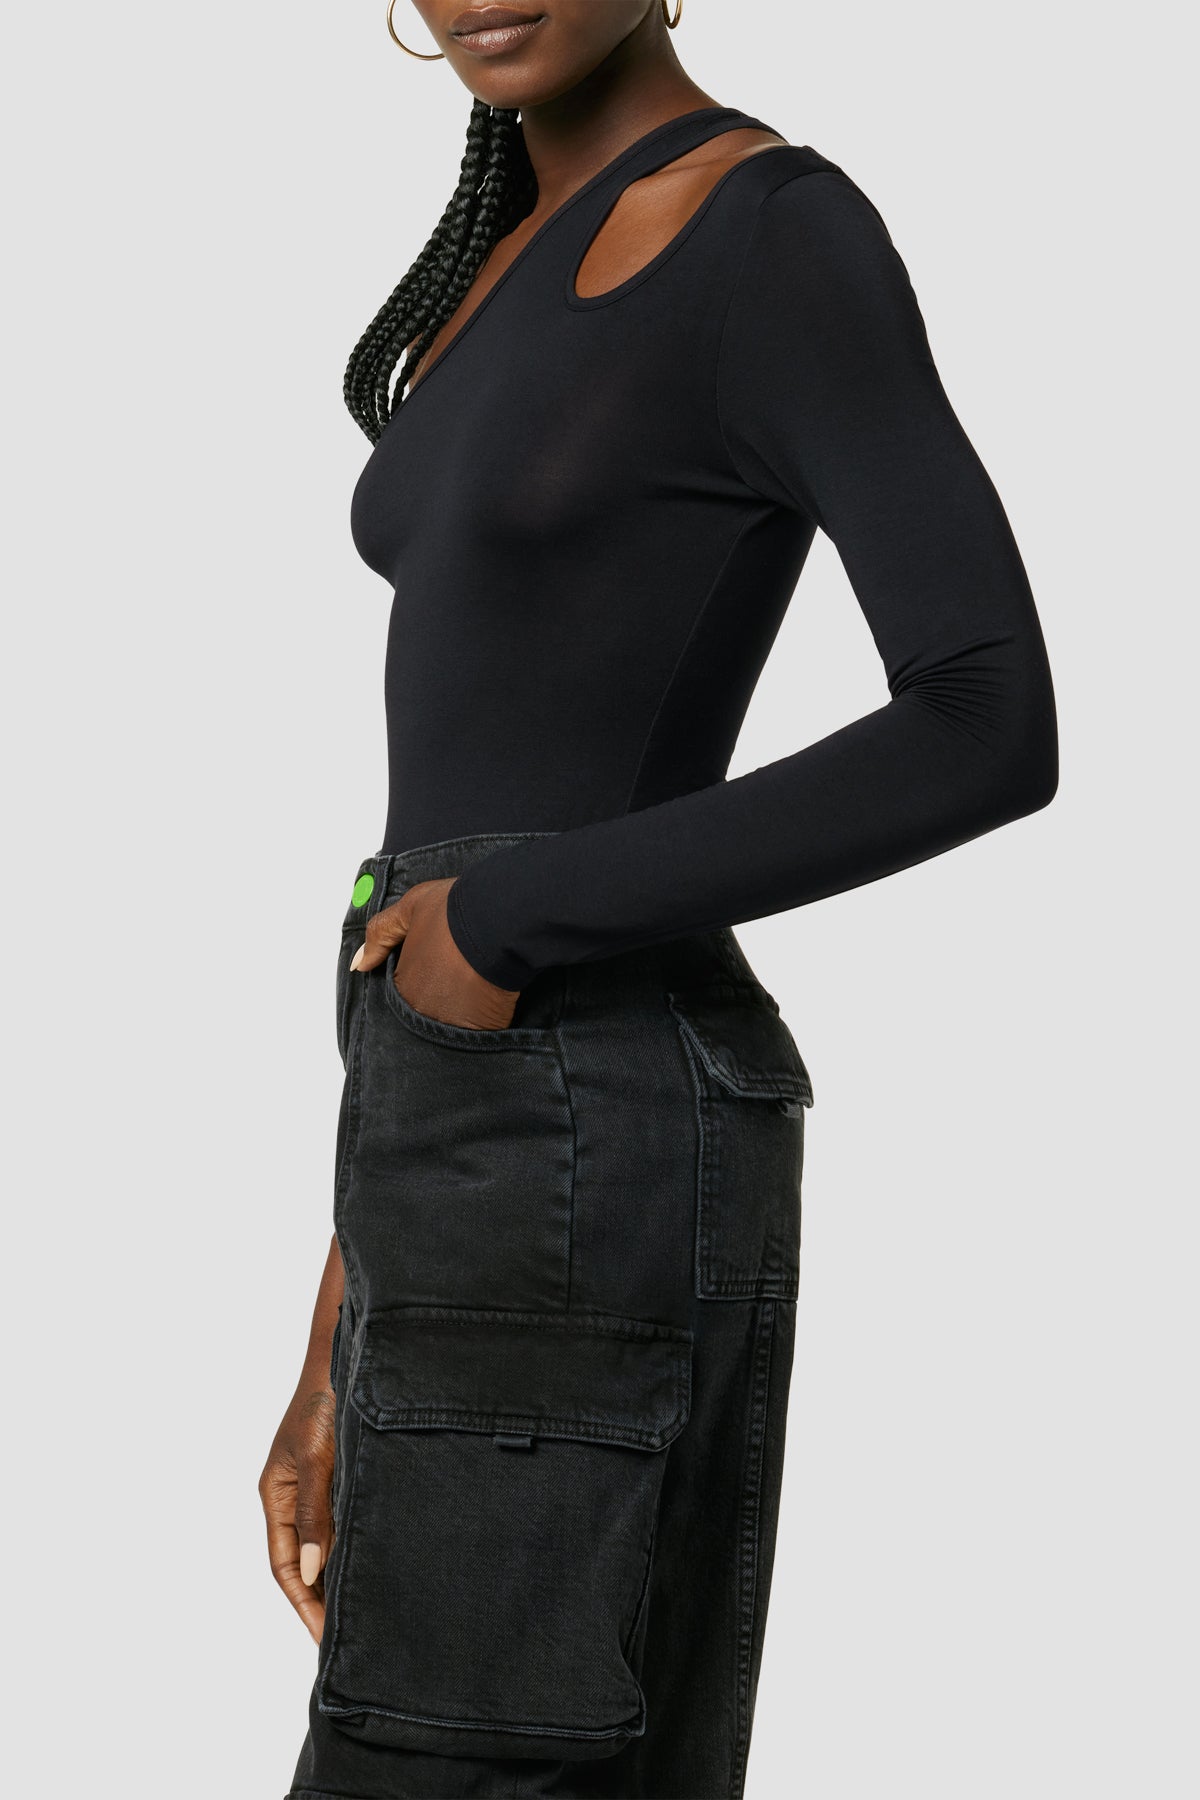 REHJJDFD Women's Long Sleeve Bodysuit Black Hollow Lace